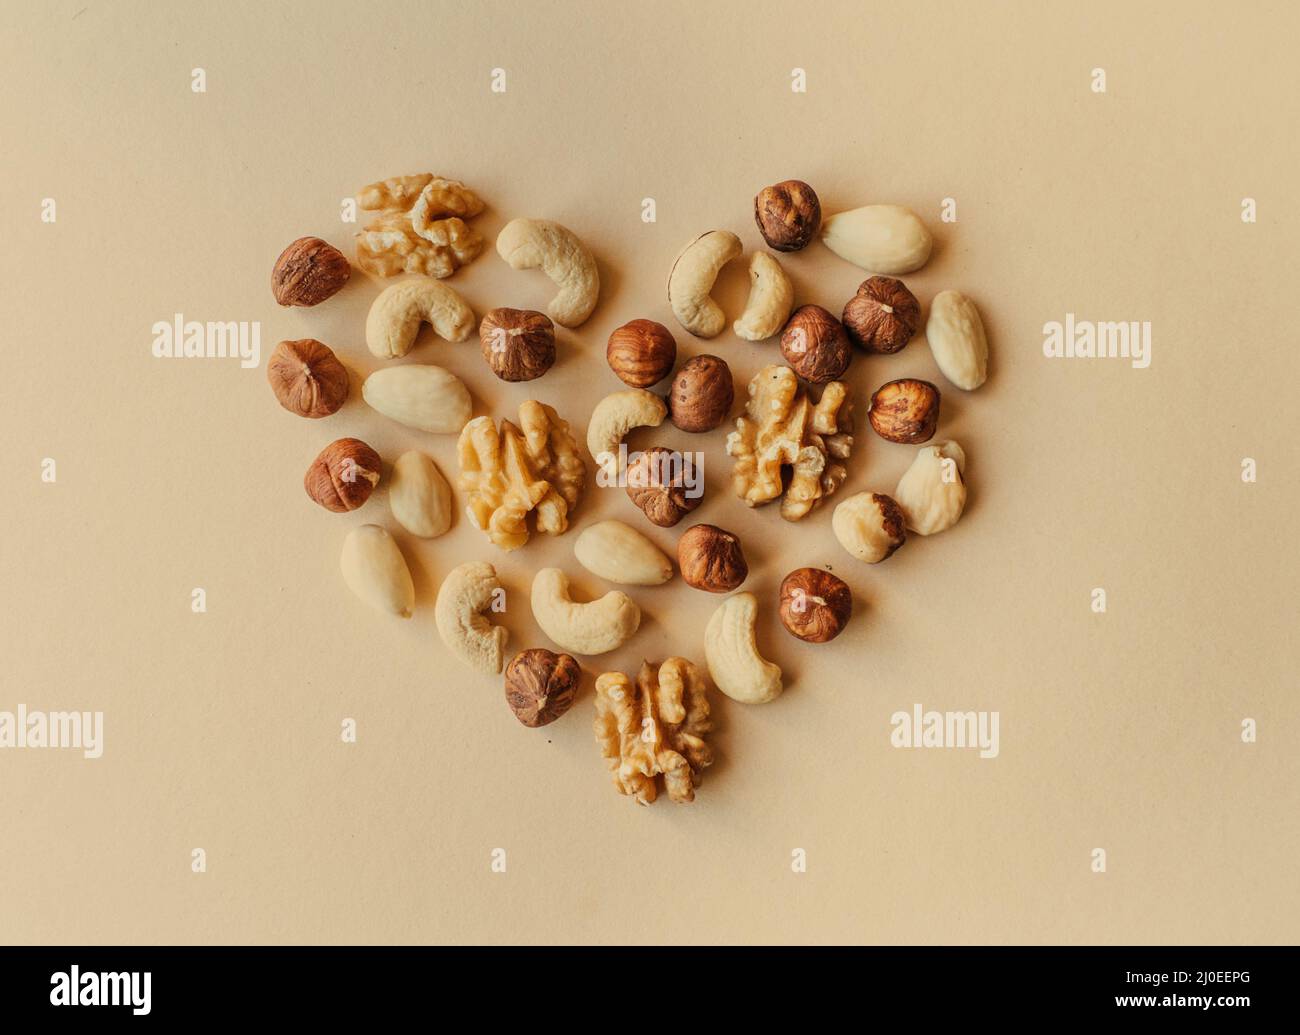 Une variété de noix, noix, amandes, noisettes et noix de cajou disposés de sorte que l'apparence d'un coeur isolé sur fond beige Banque D'Images